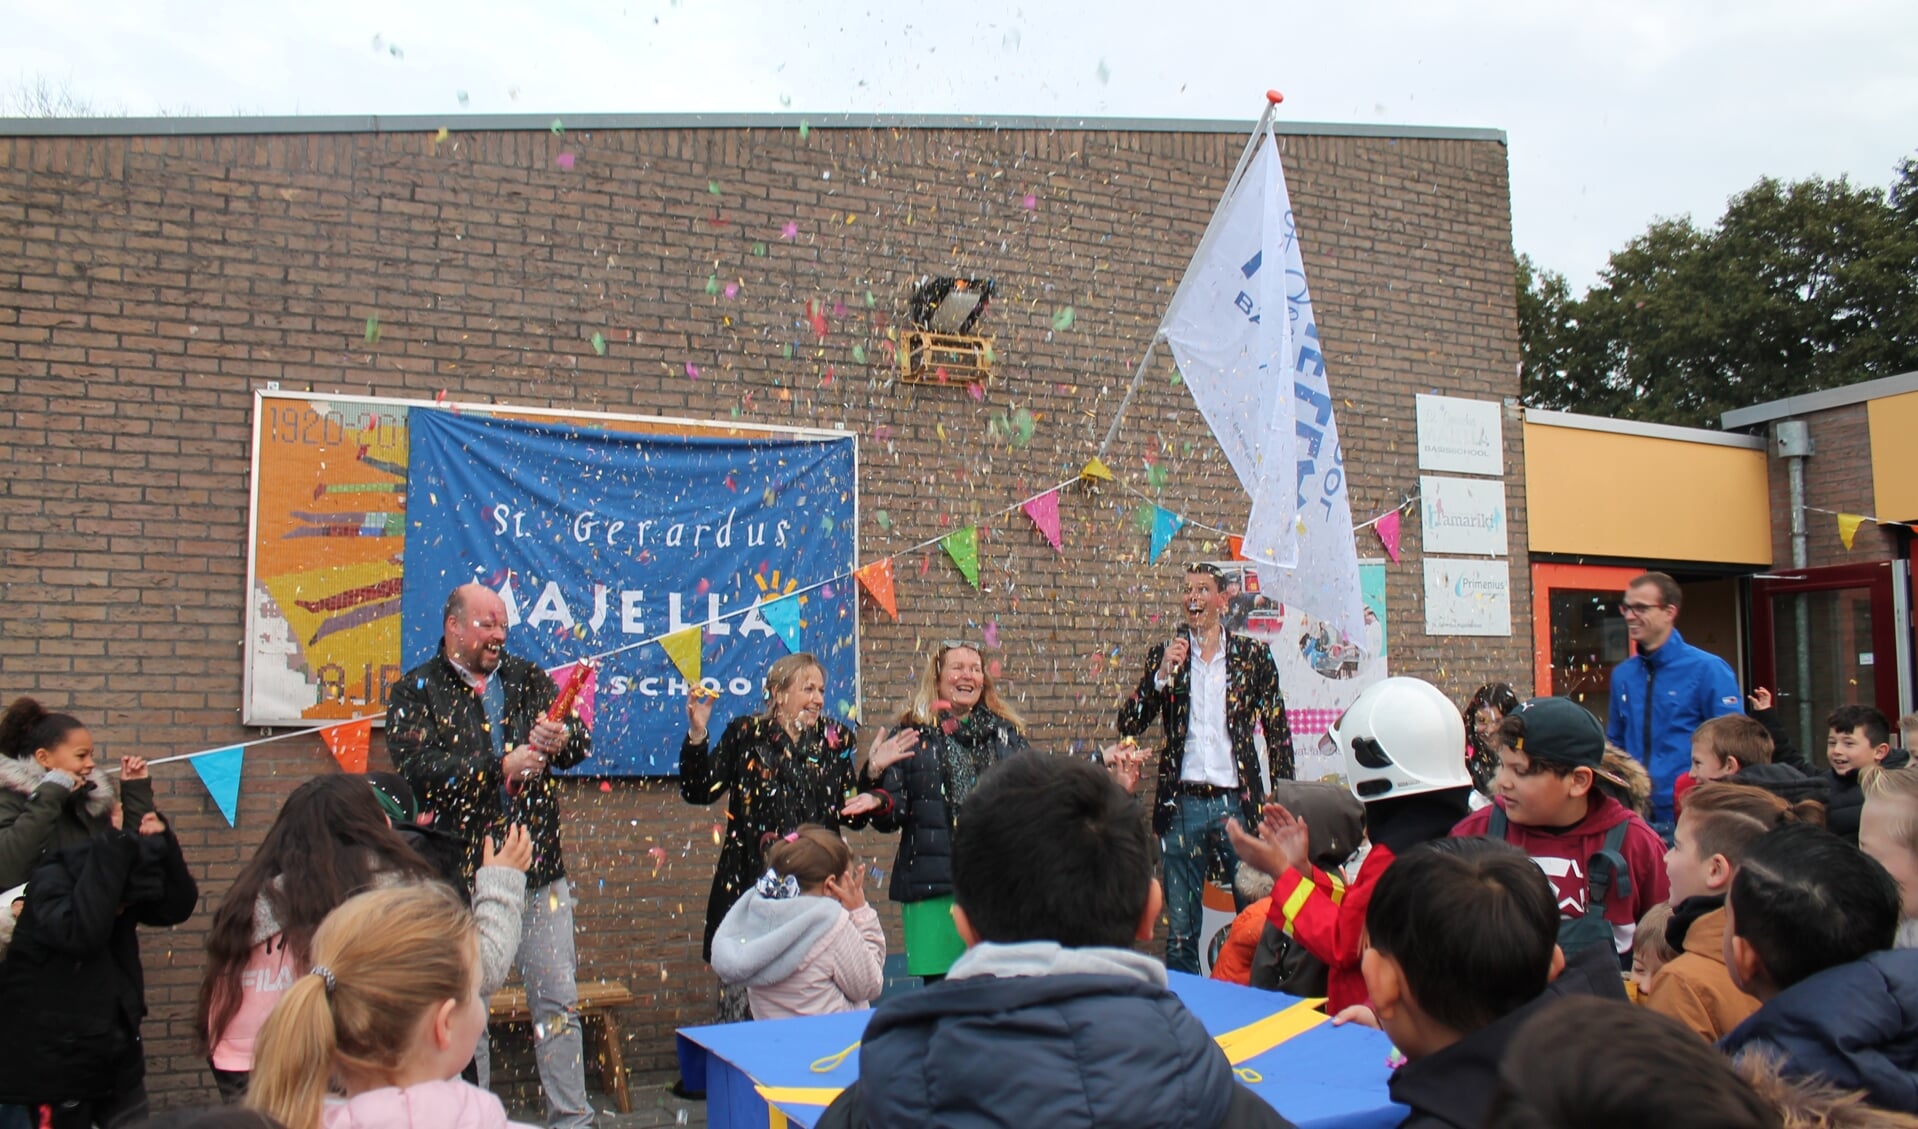 De start van het onderwijsprogramma op de Sint Gerardus Majellaschool. (foto Esmée van Diggelen)